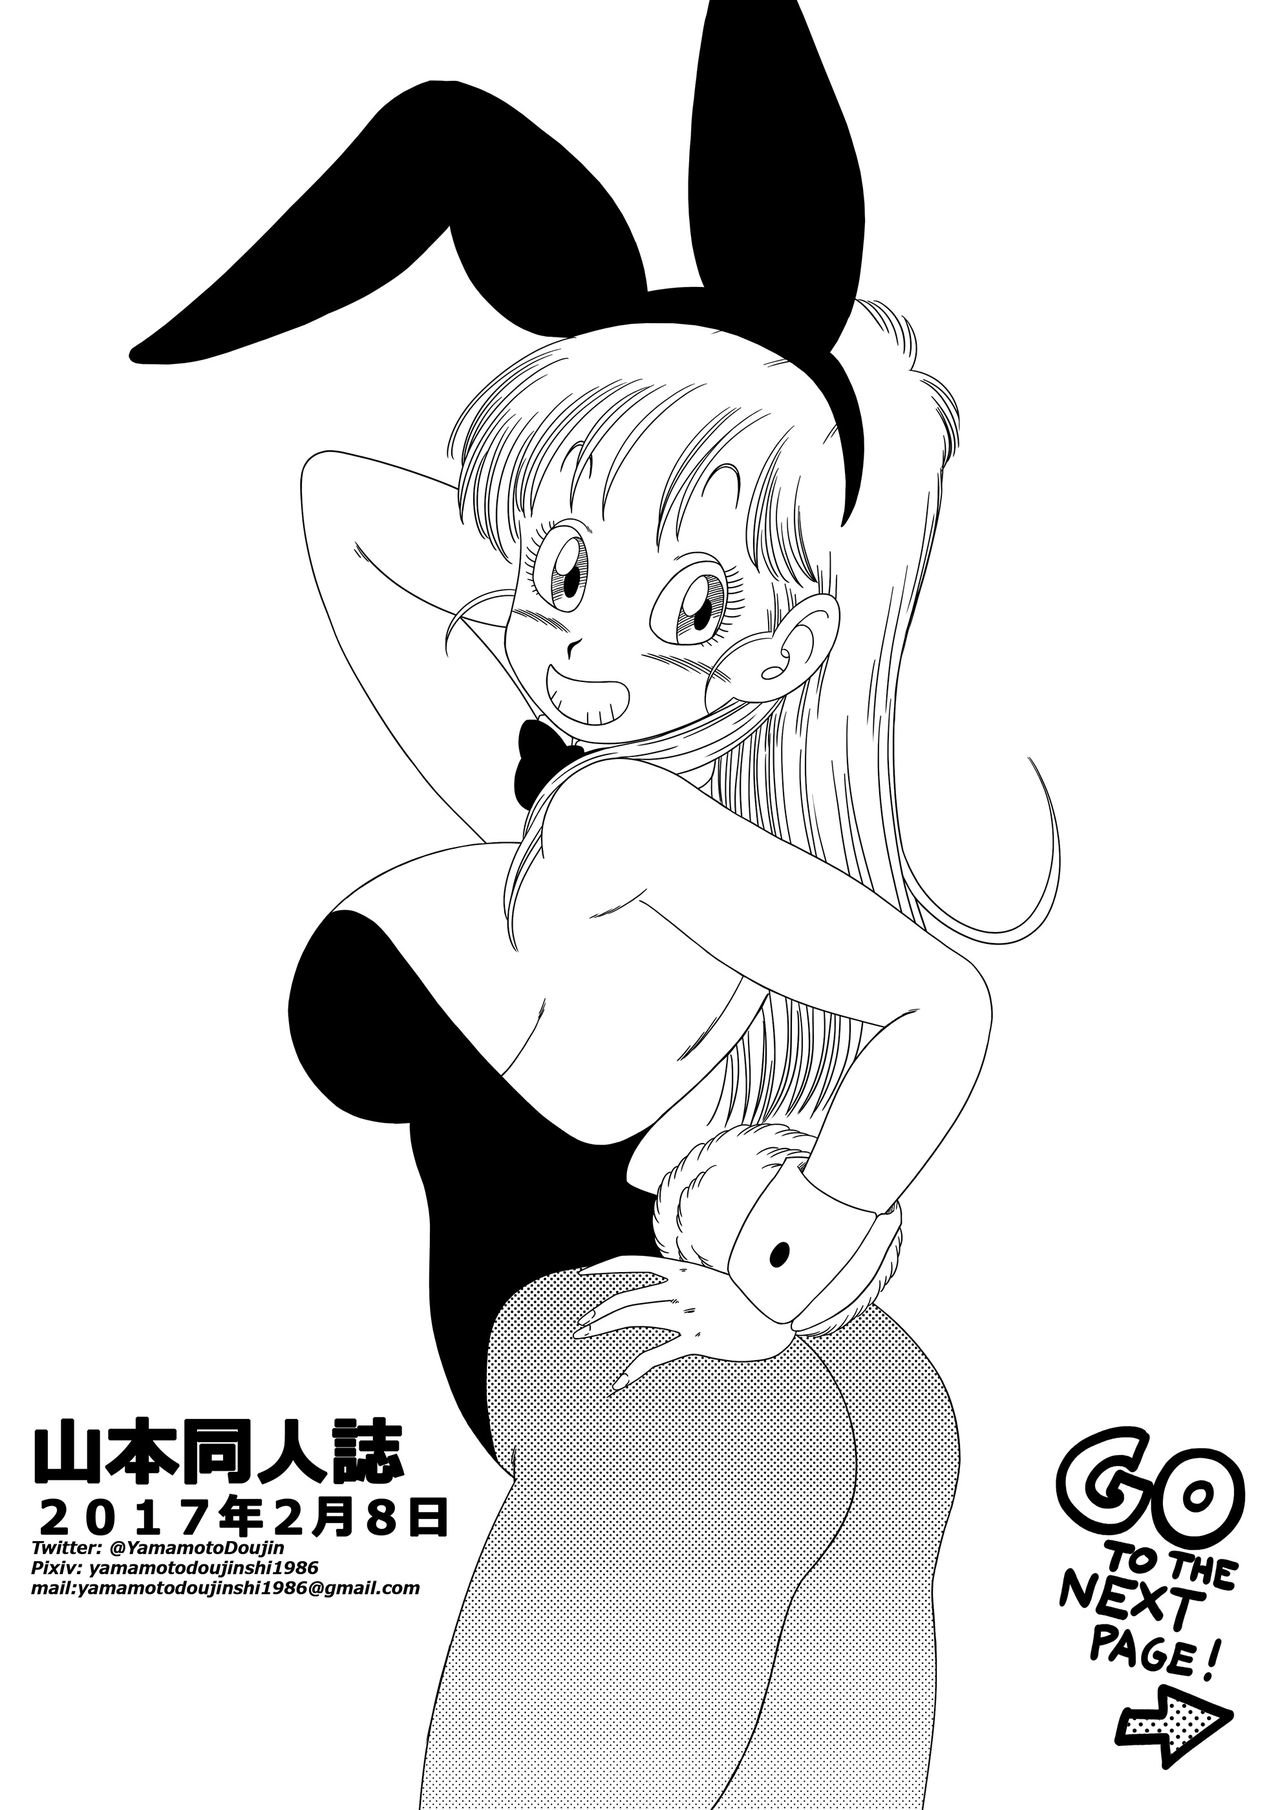 Bunny Girl Transformation - Tansformacion En Chica Conejo - 20